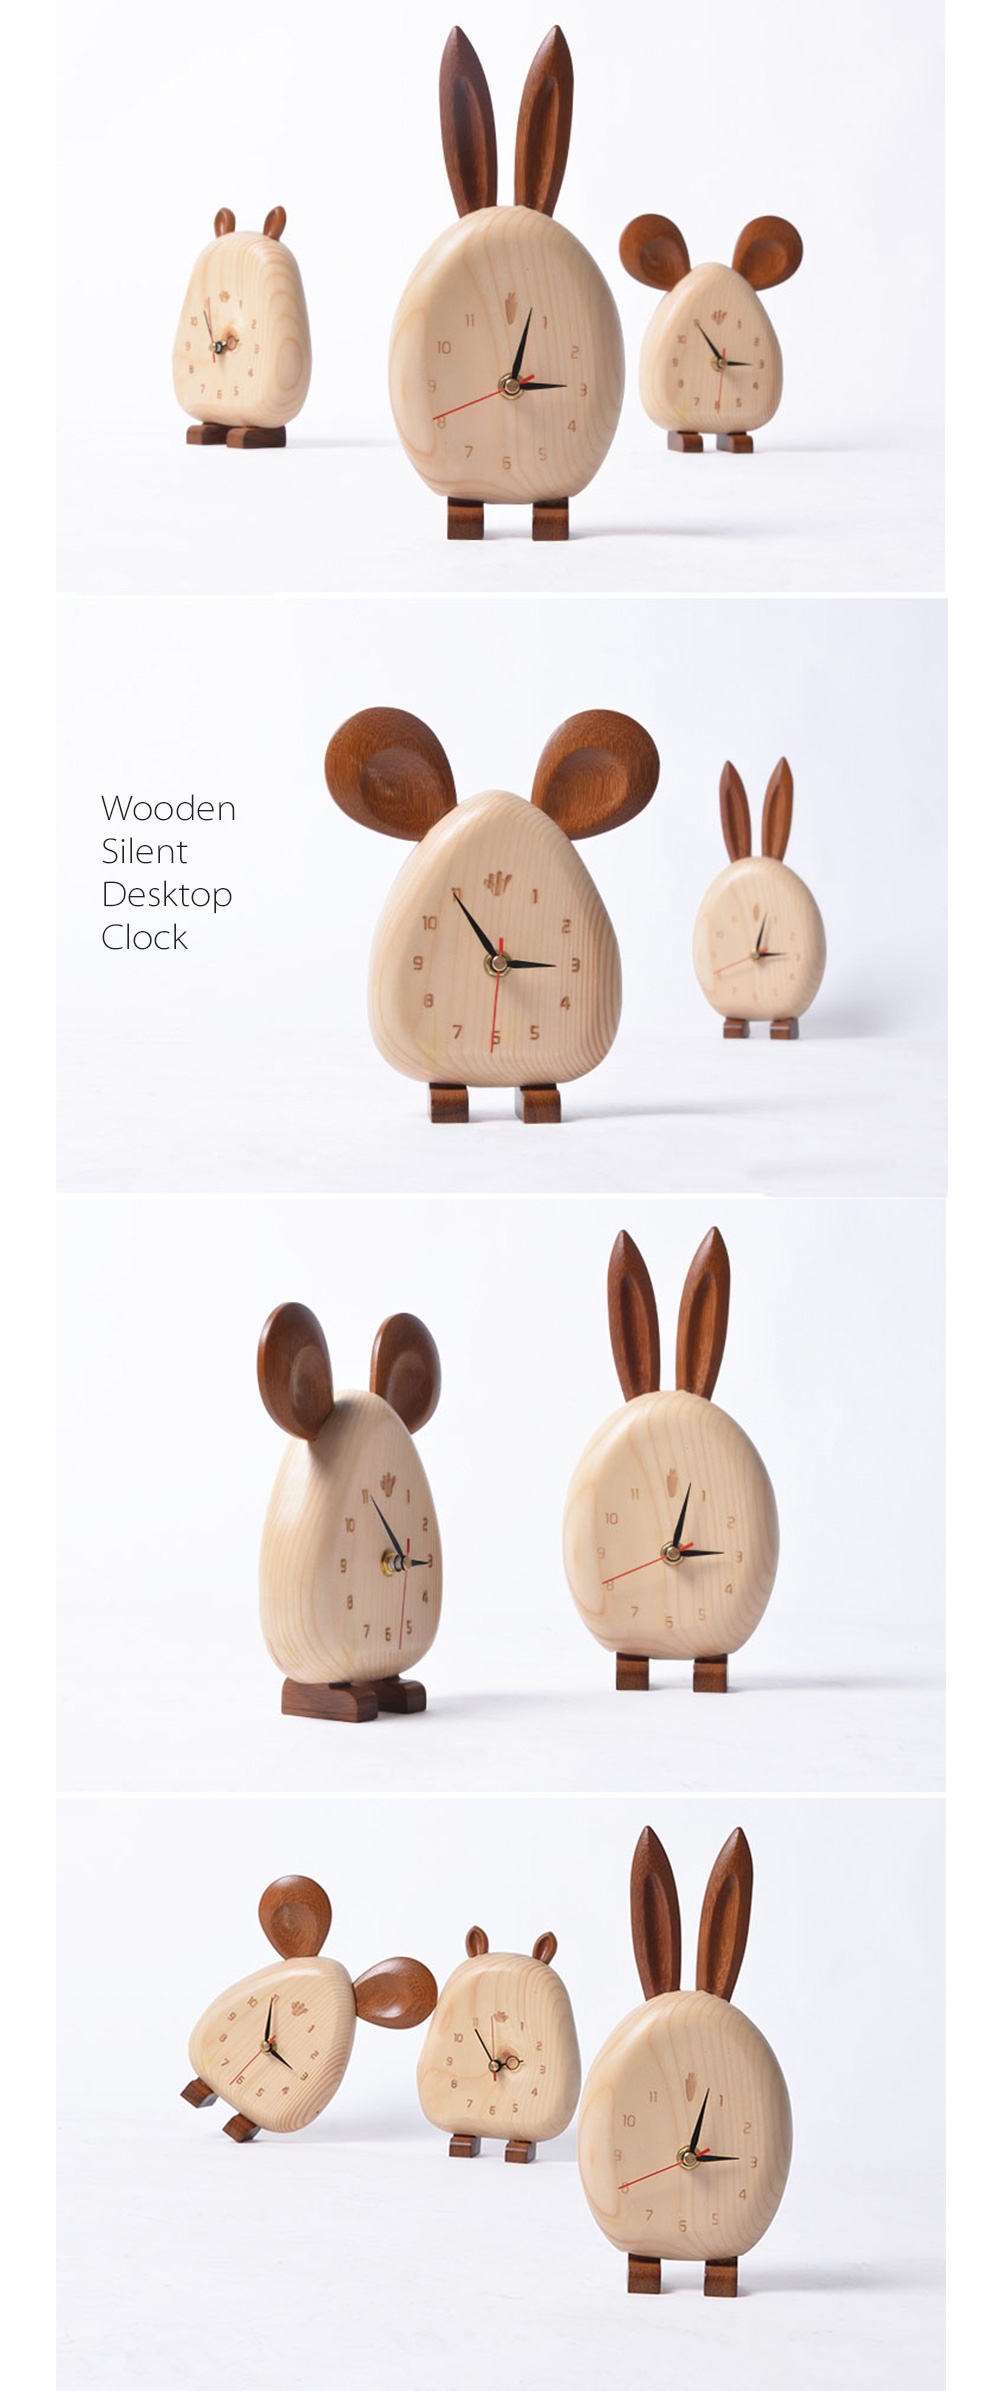 Wooden Rabbit Clock Puzzles